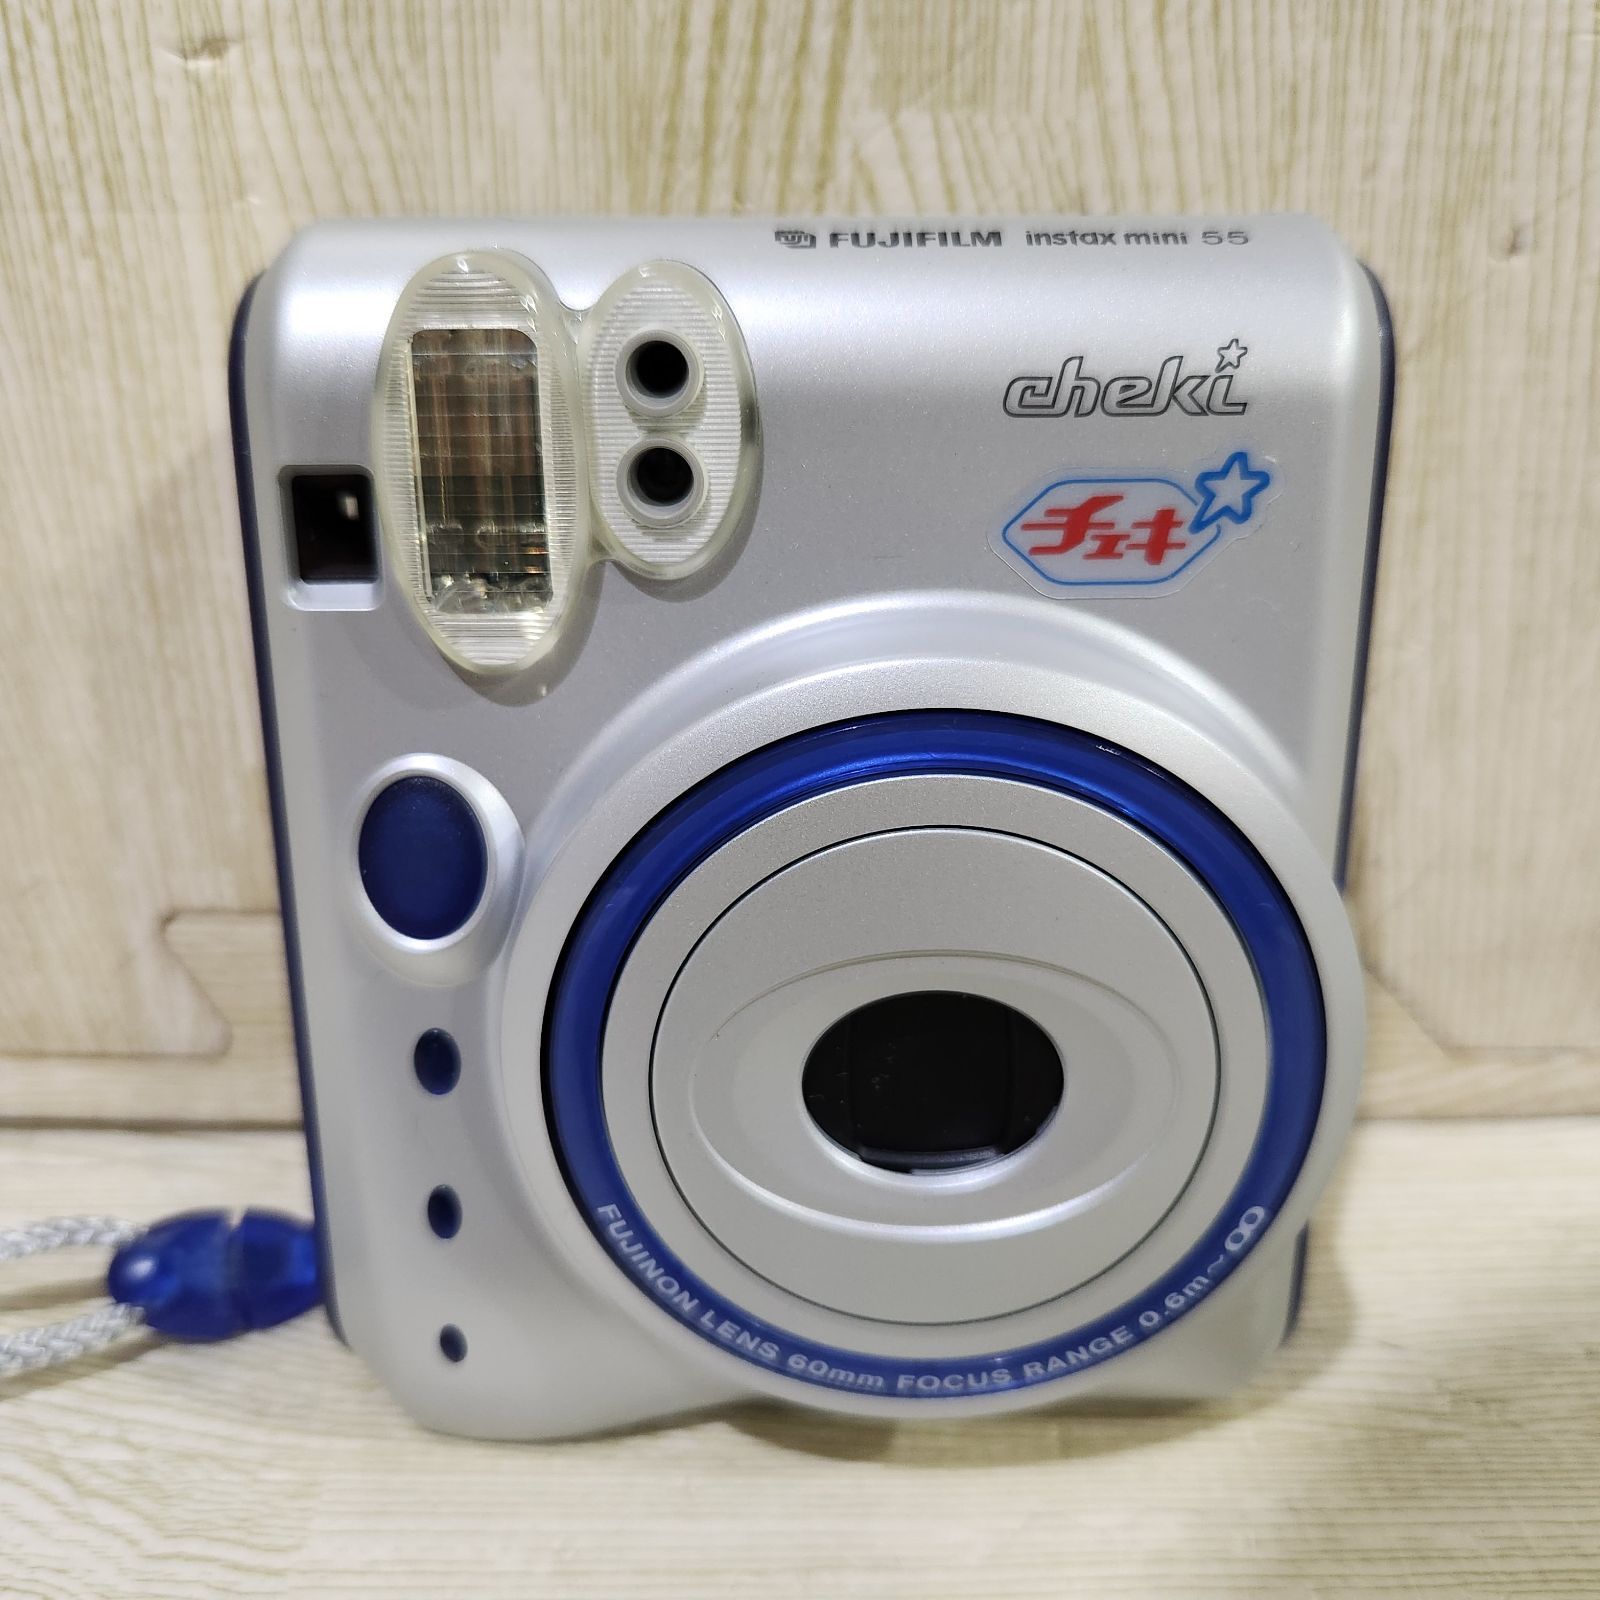 FUJIFILM チェキ instax mini 55 インスタントカメラ - メルカリ